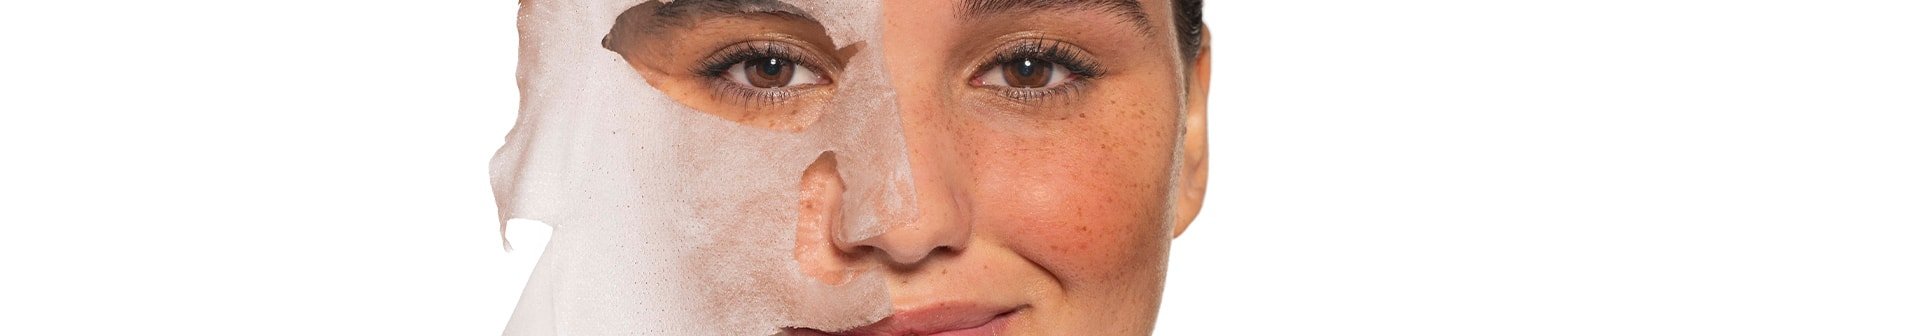 Maske za obraz: kateri tip najbolj ustreza vašemu tipu kože?